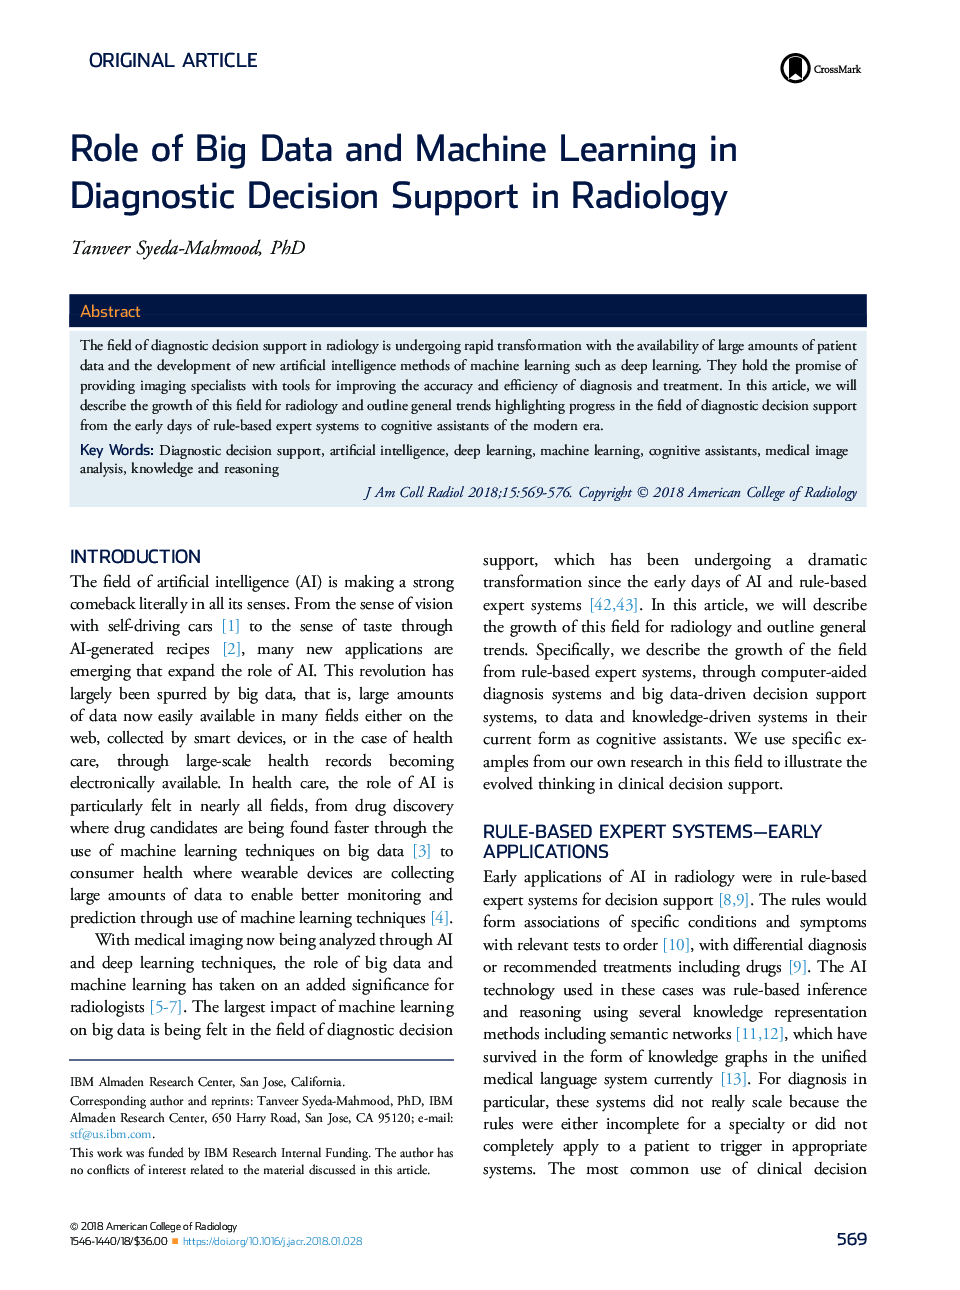 نقش داده های بزرگ و یادگیری ماشین در پشتیبانی از تصمیم گیری تشخیصی در رادیولوژی 